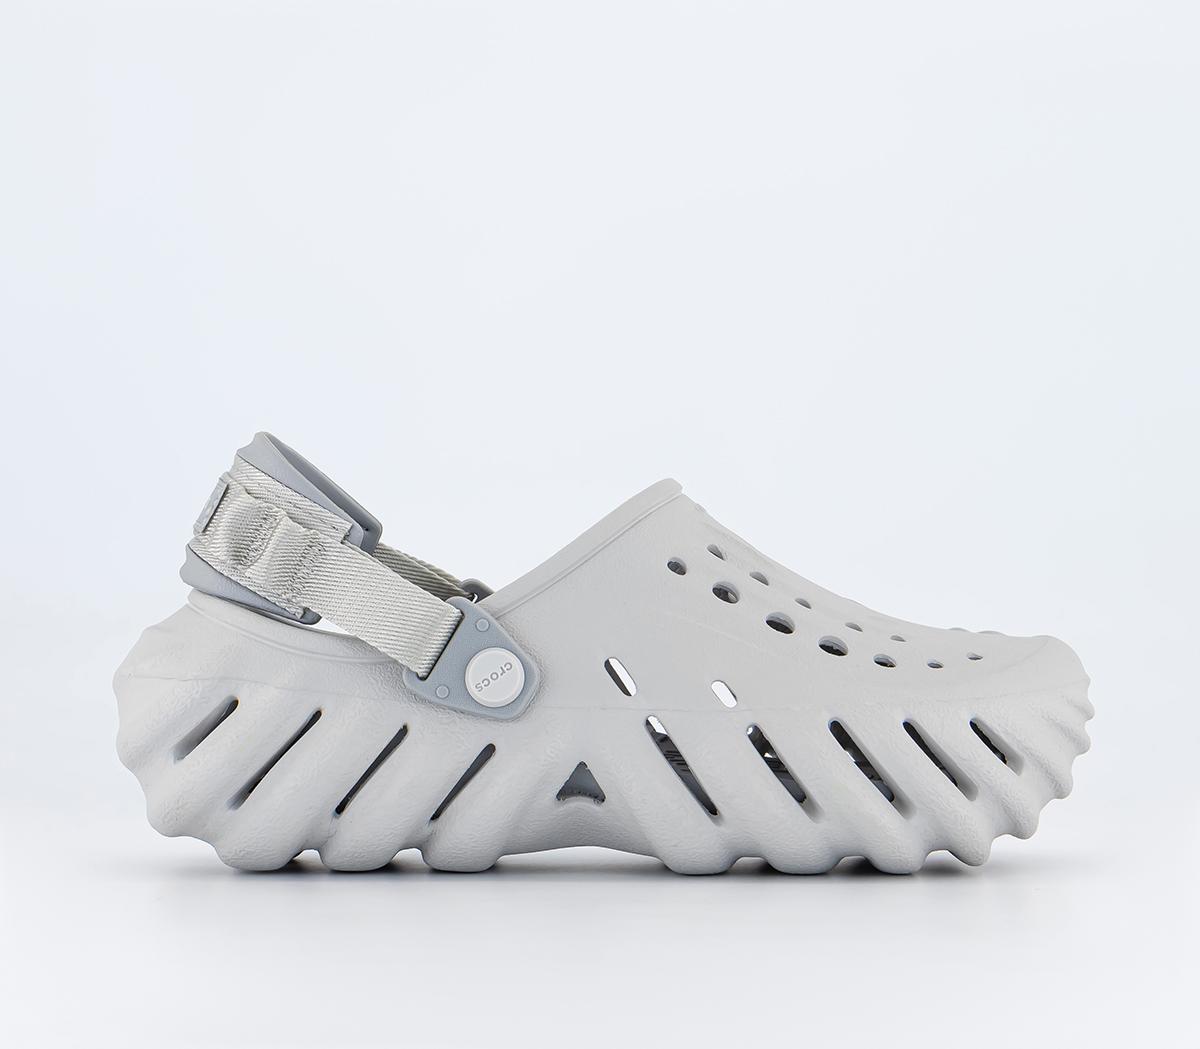 Crocs Echo Clogs M Atmosphere - Men's Casual Shoes